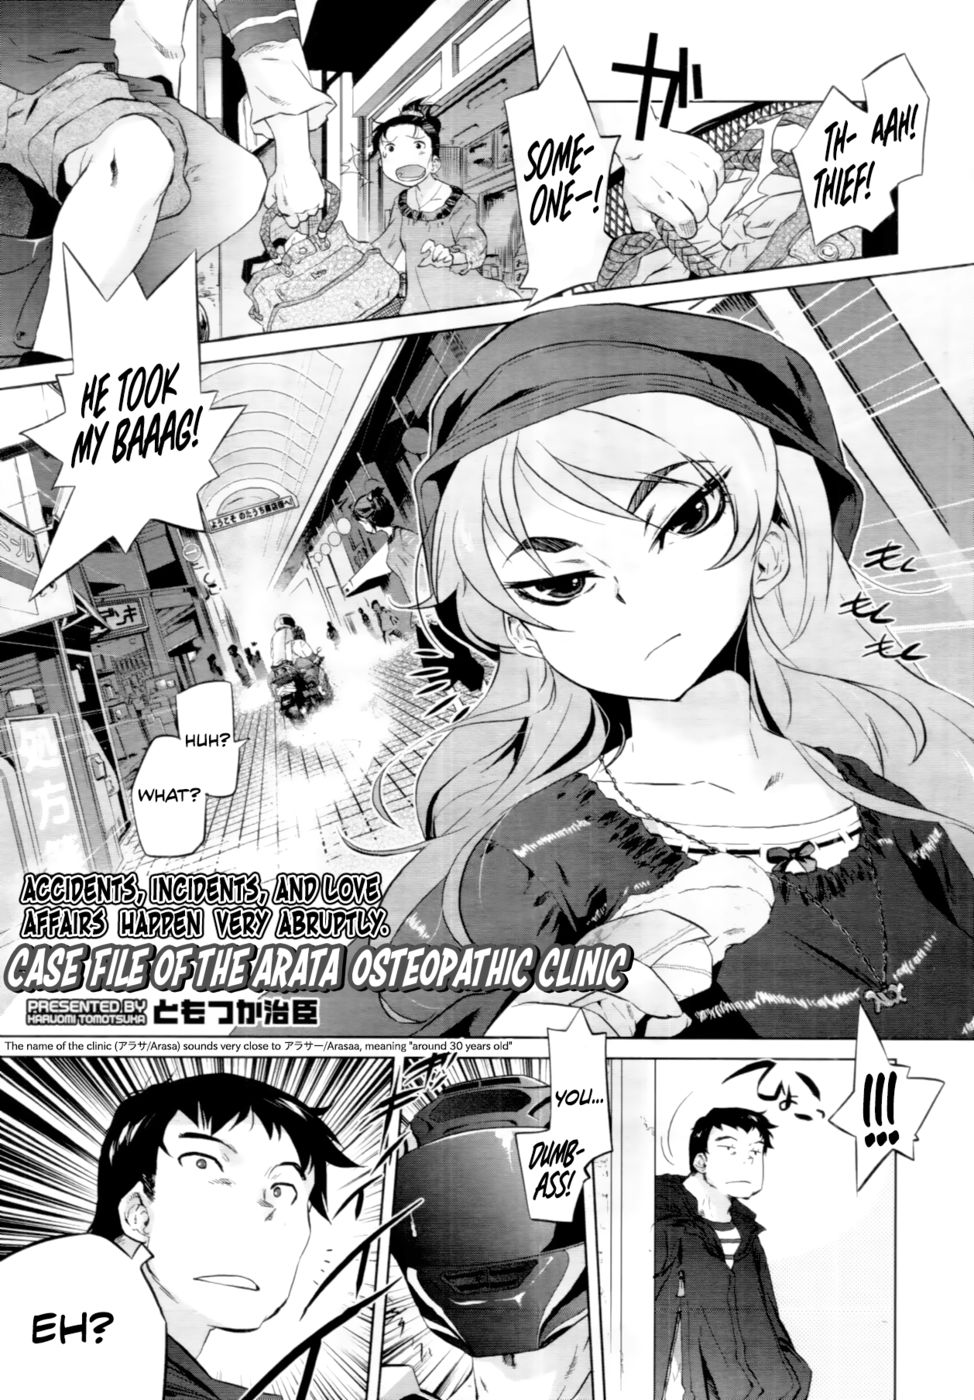 Hentai Manga Comic-Case File of the Arata Osteopathic Clinic-Read-1